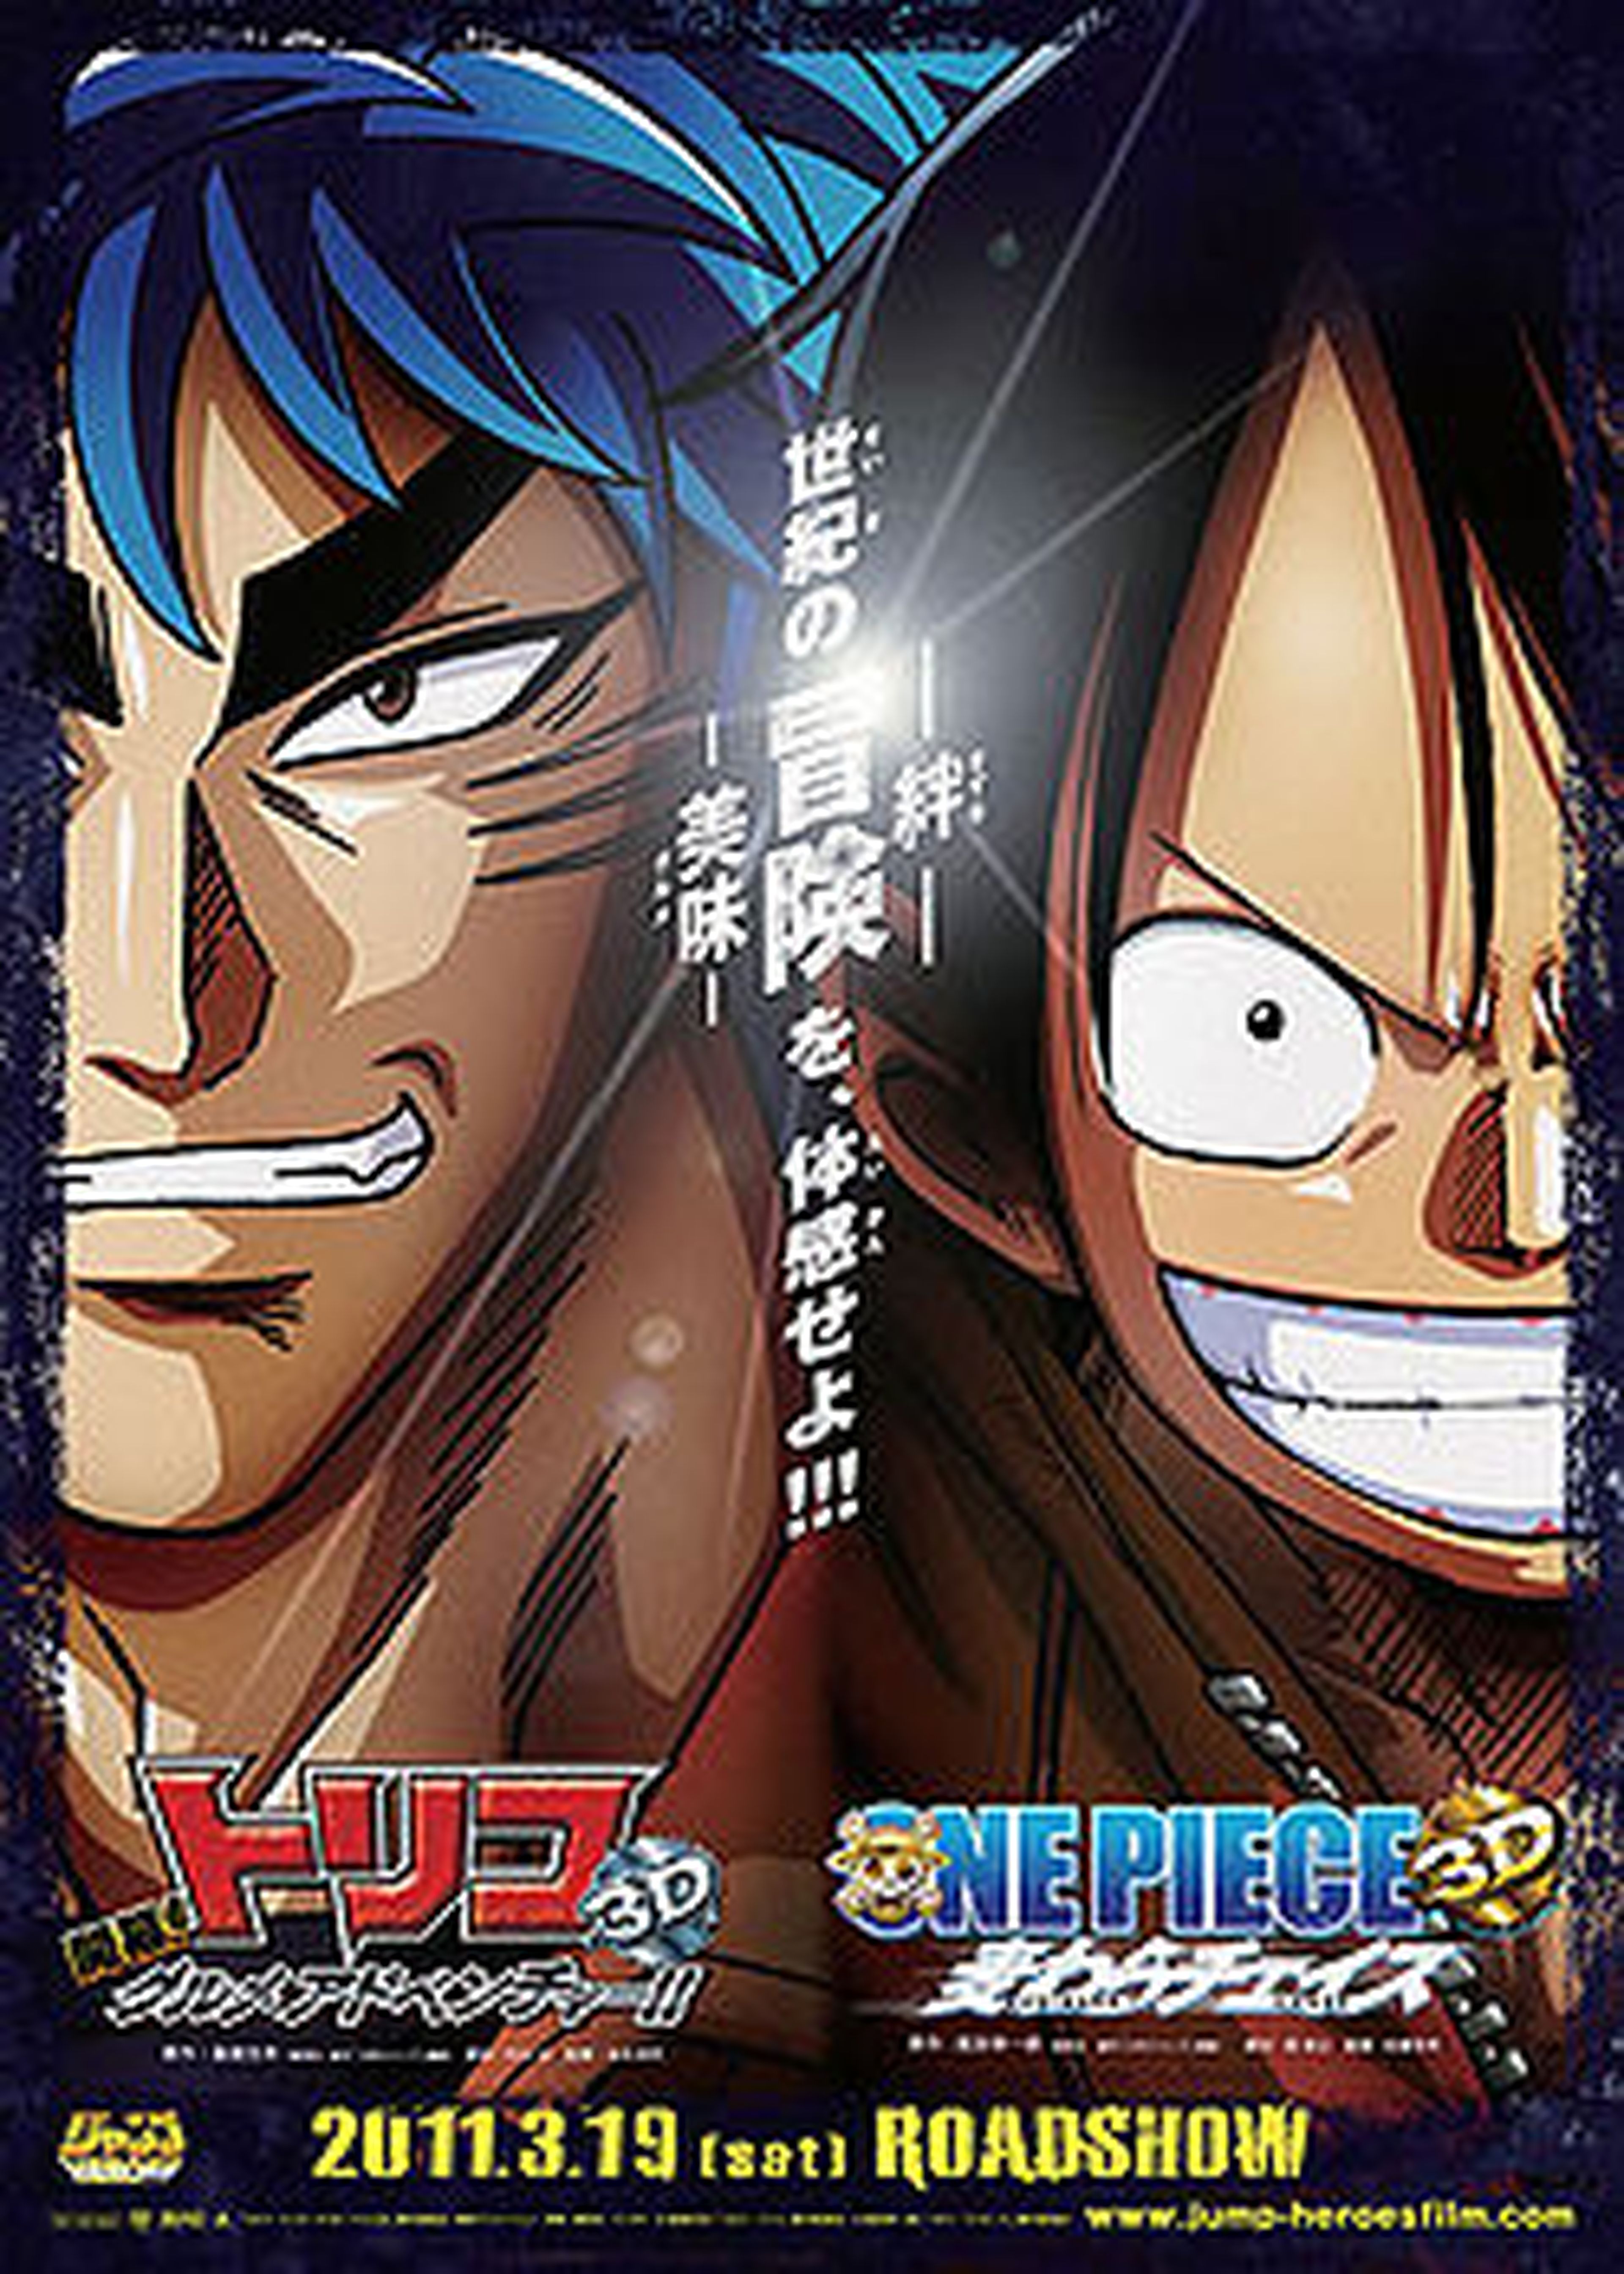 Películas de Toriko y One Piece en el Salón del Manga